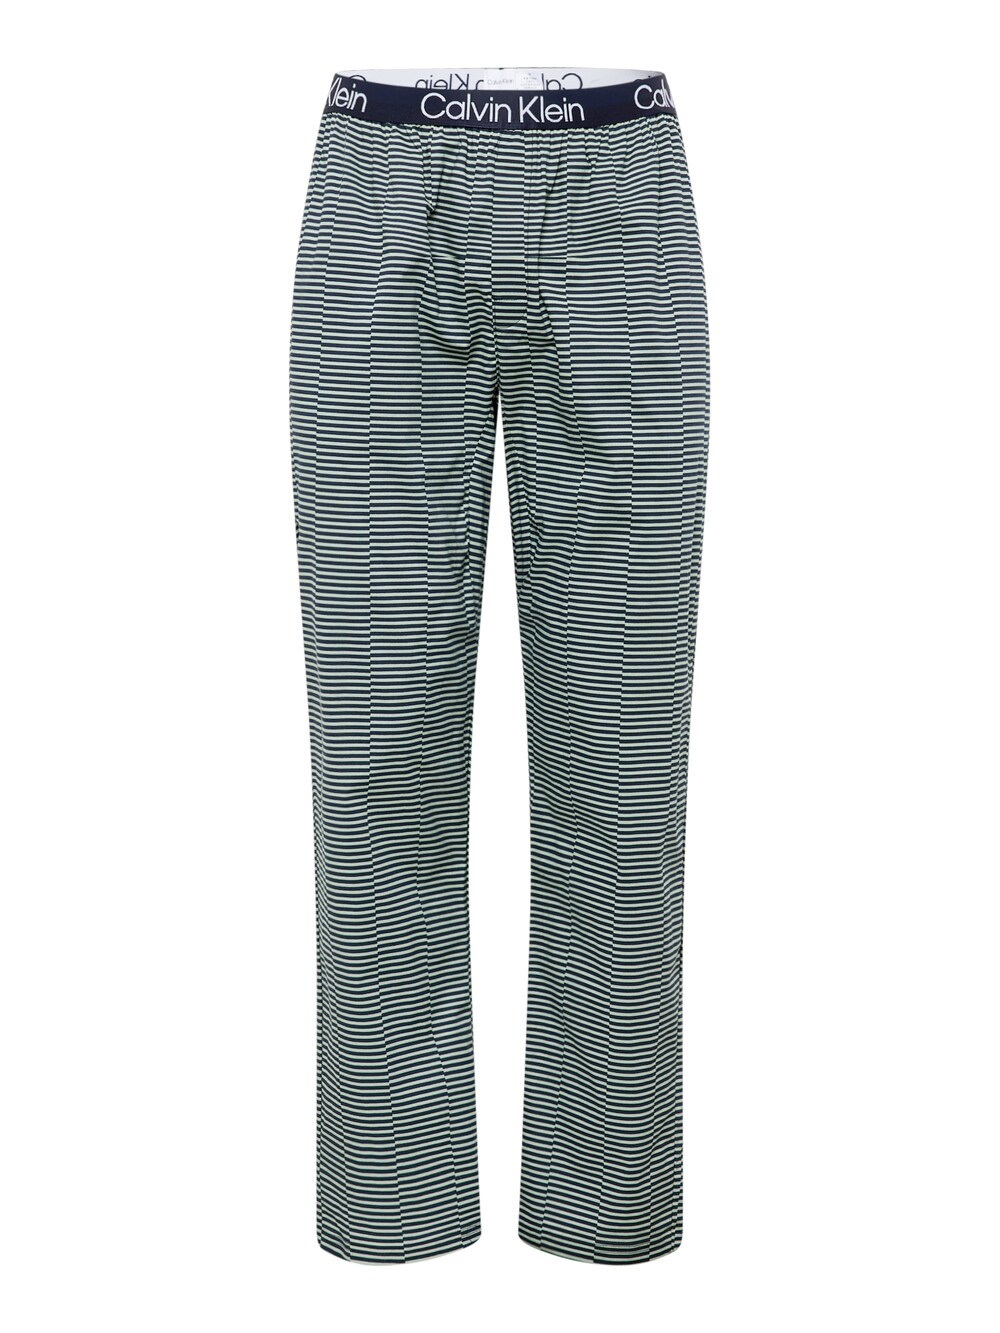 

Обычные пижамные штаны Calvin Klein, темно-синий